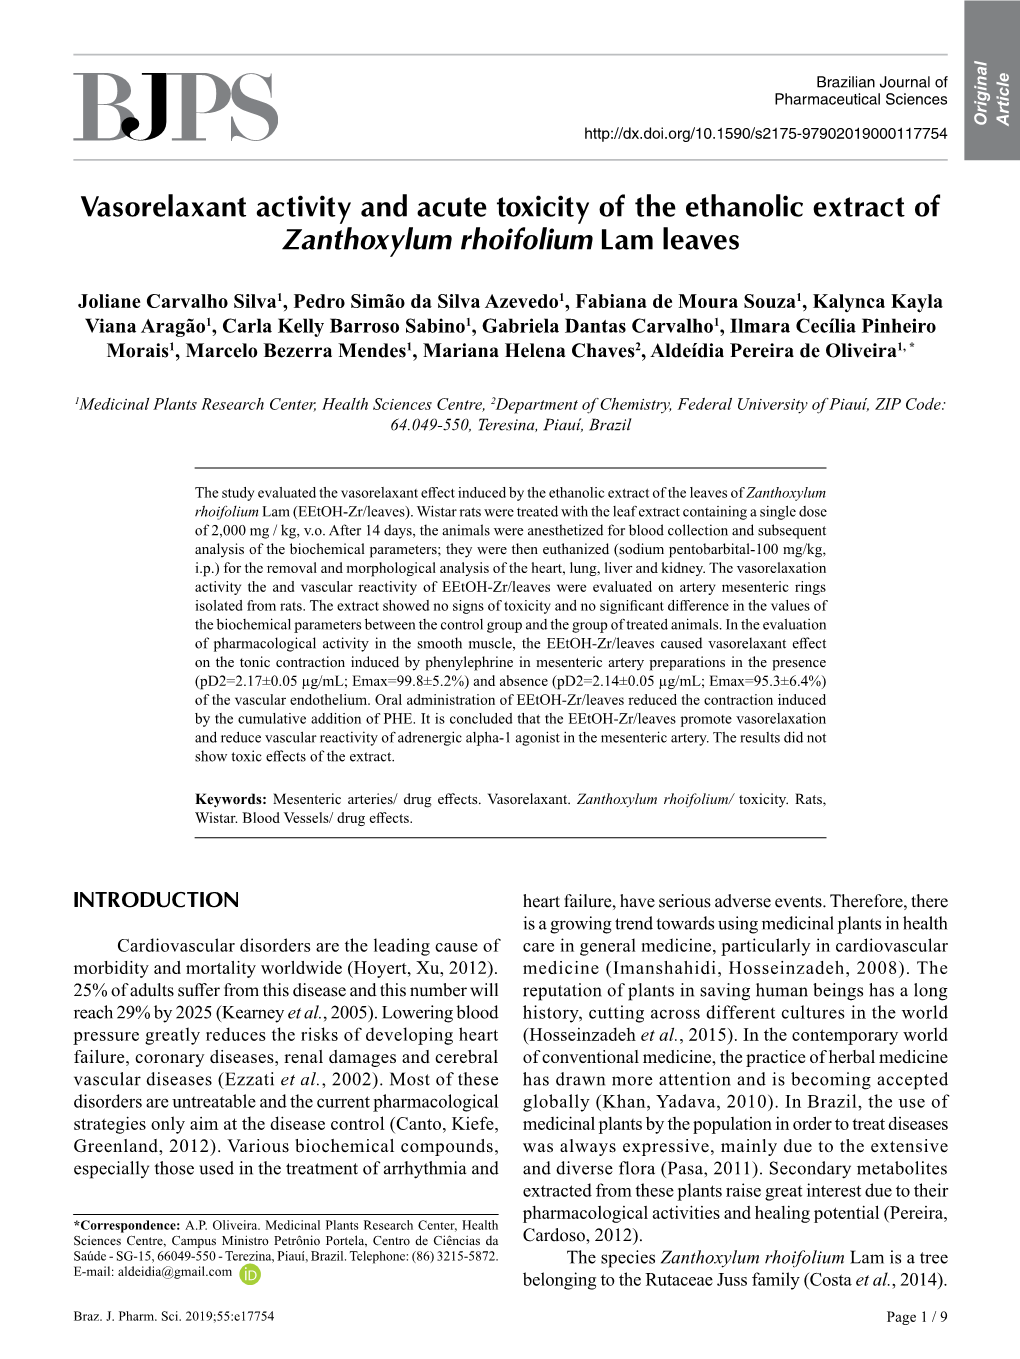 Vasorelaxant Activity and Acute Toxicity of the Ethanolic Extract of Zanthoxylum Rhoifolium Lam Leaves